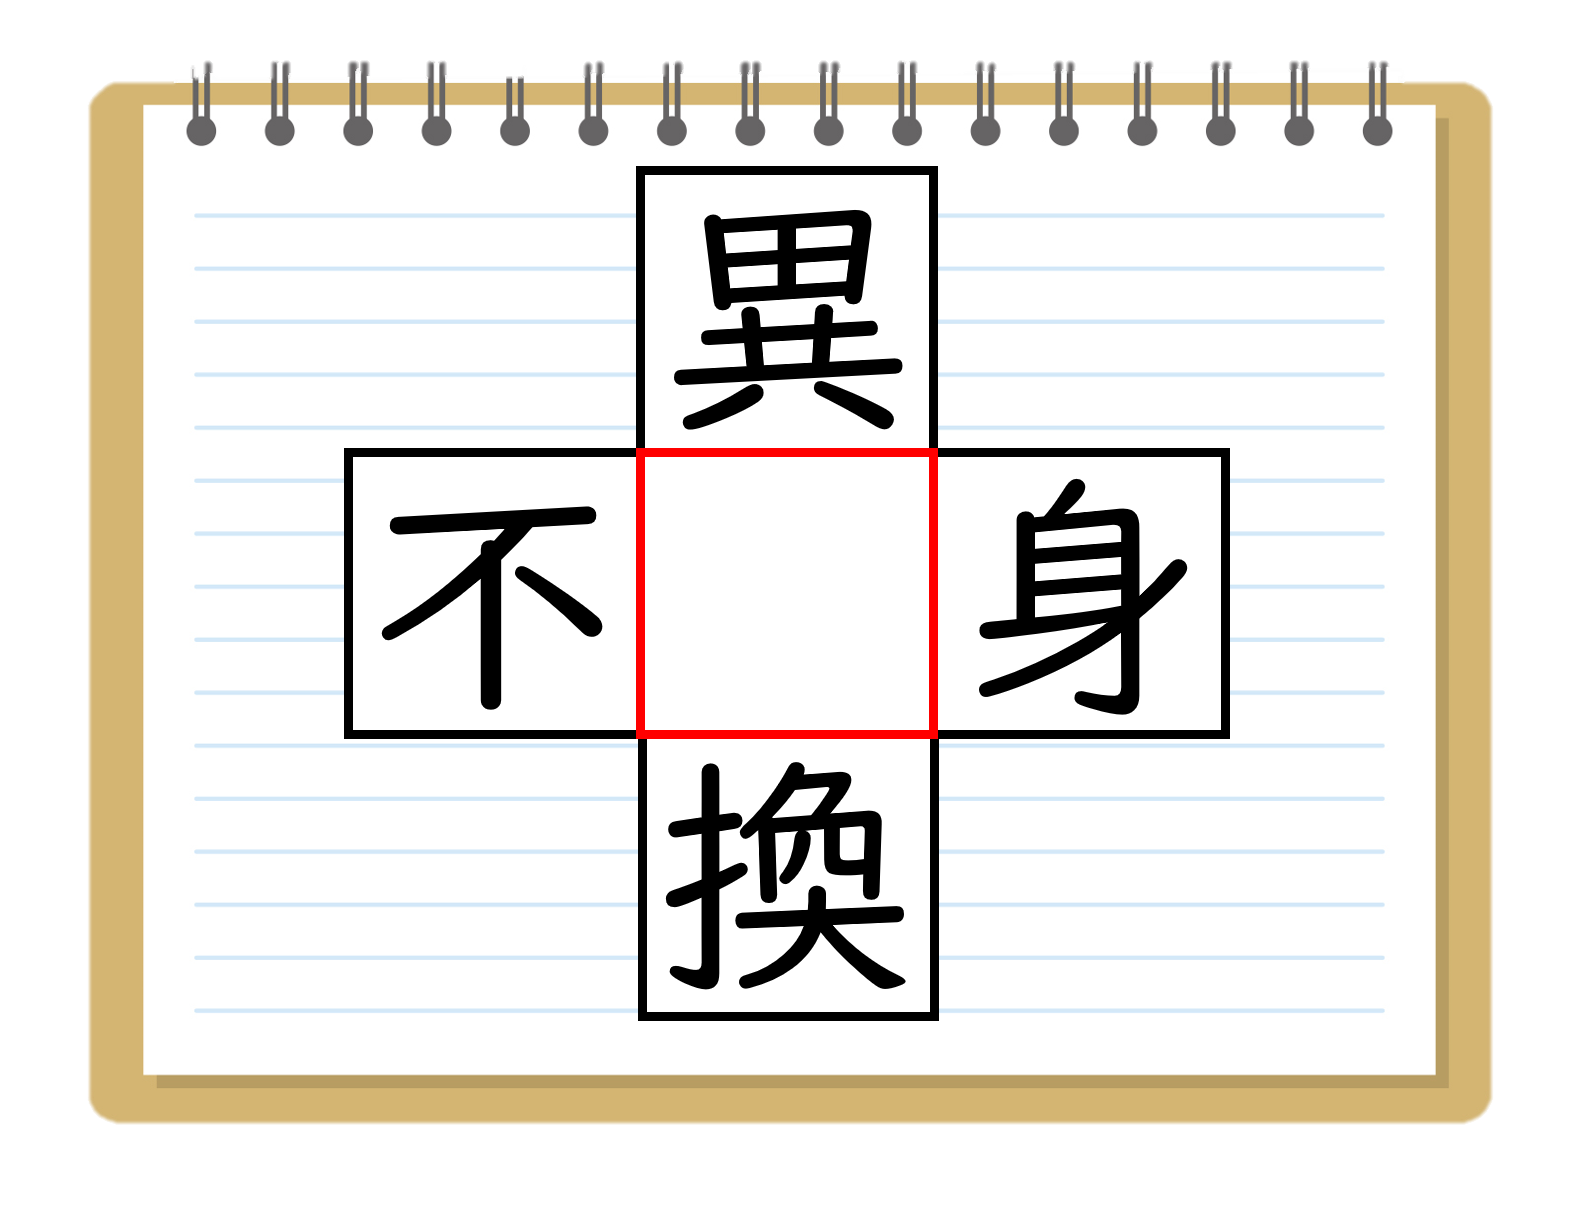 漢字穴埋めクイズ 中学生向け 全問 脳トレおもしろ虫食い問題 パズル クイズ王国